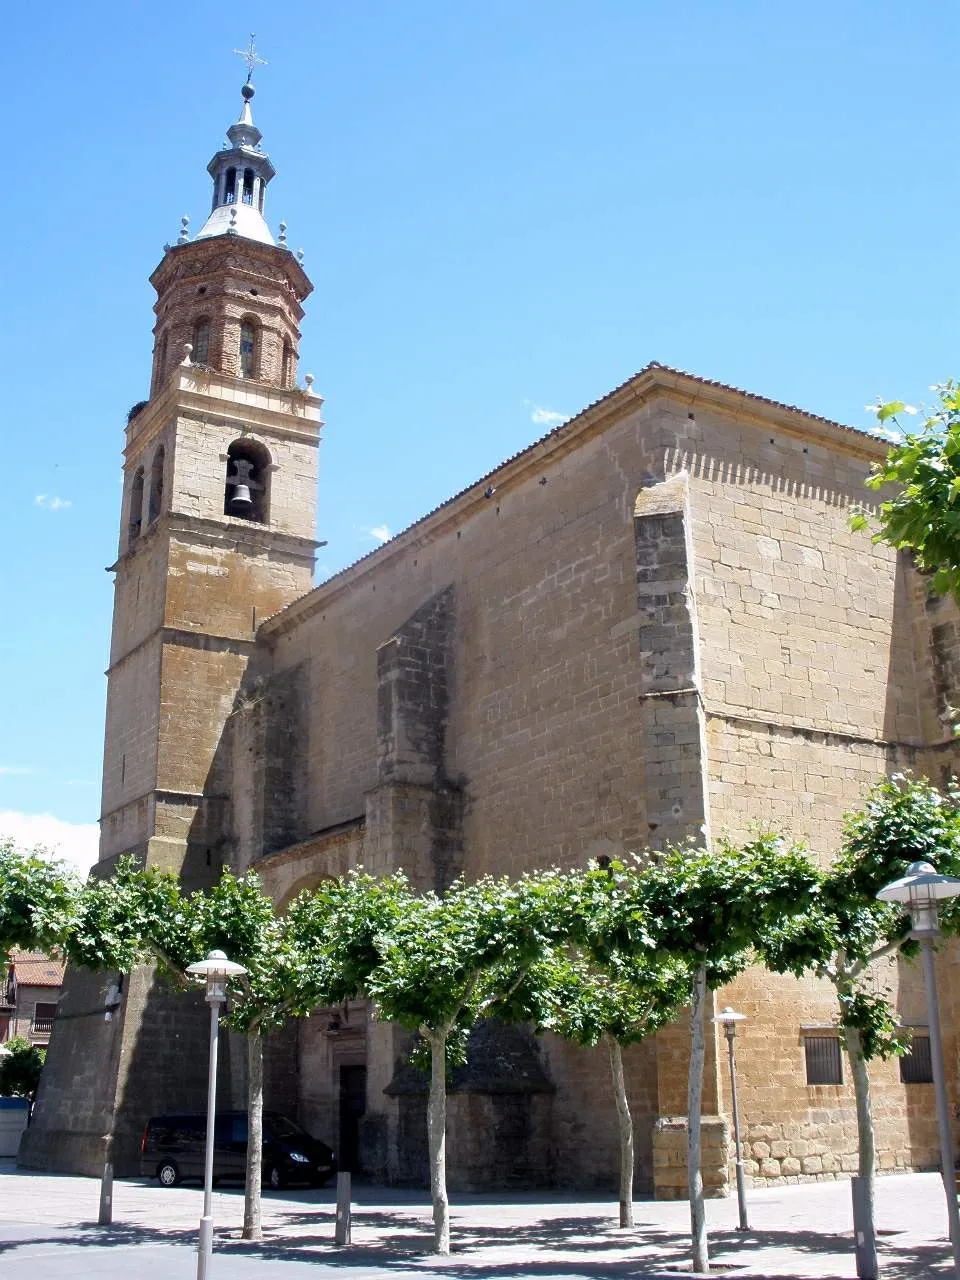 Bild von La Rioja